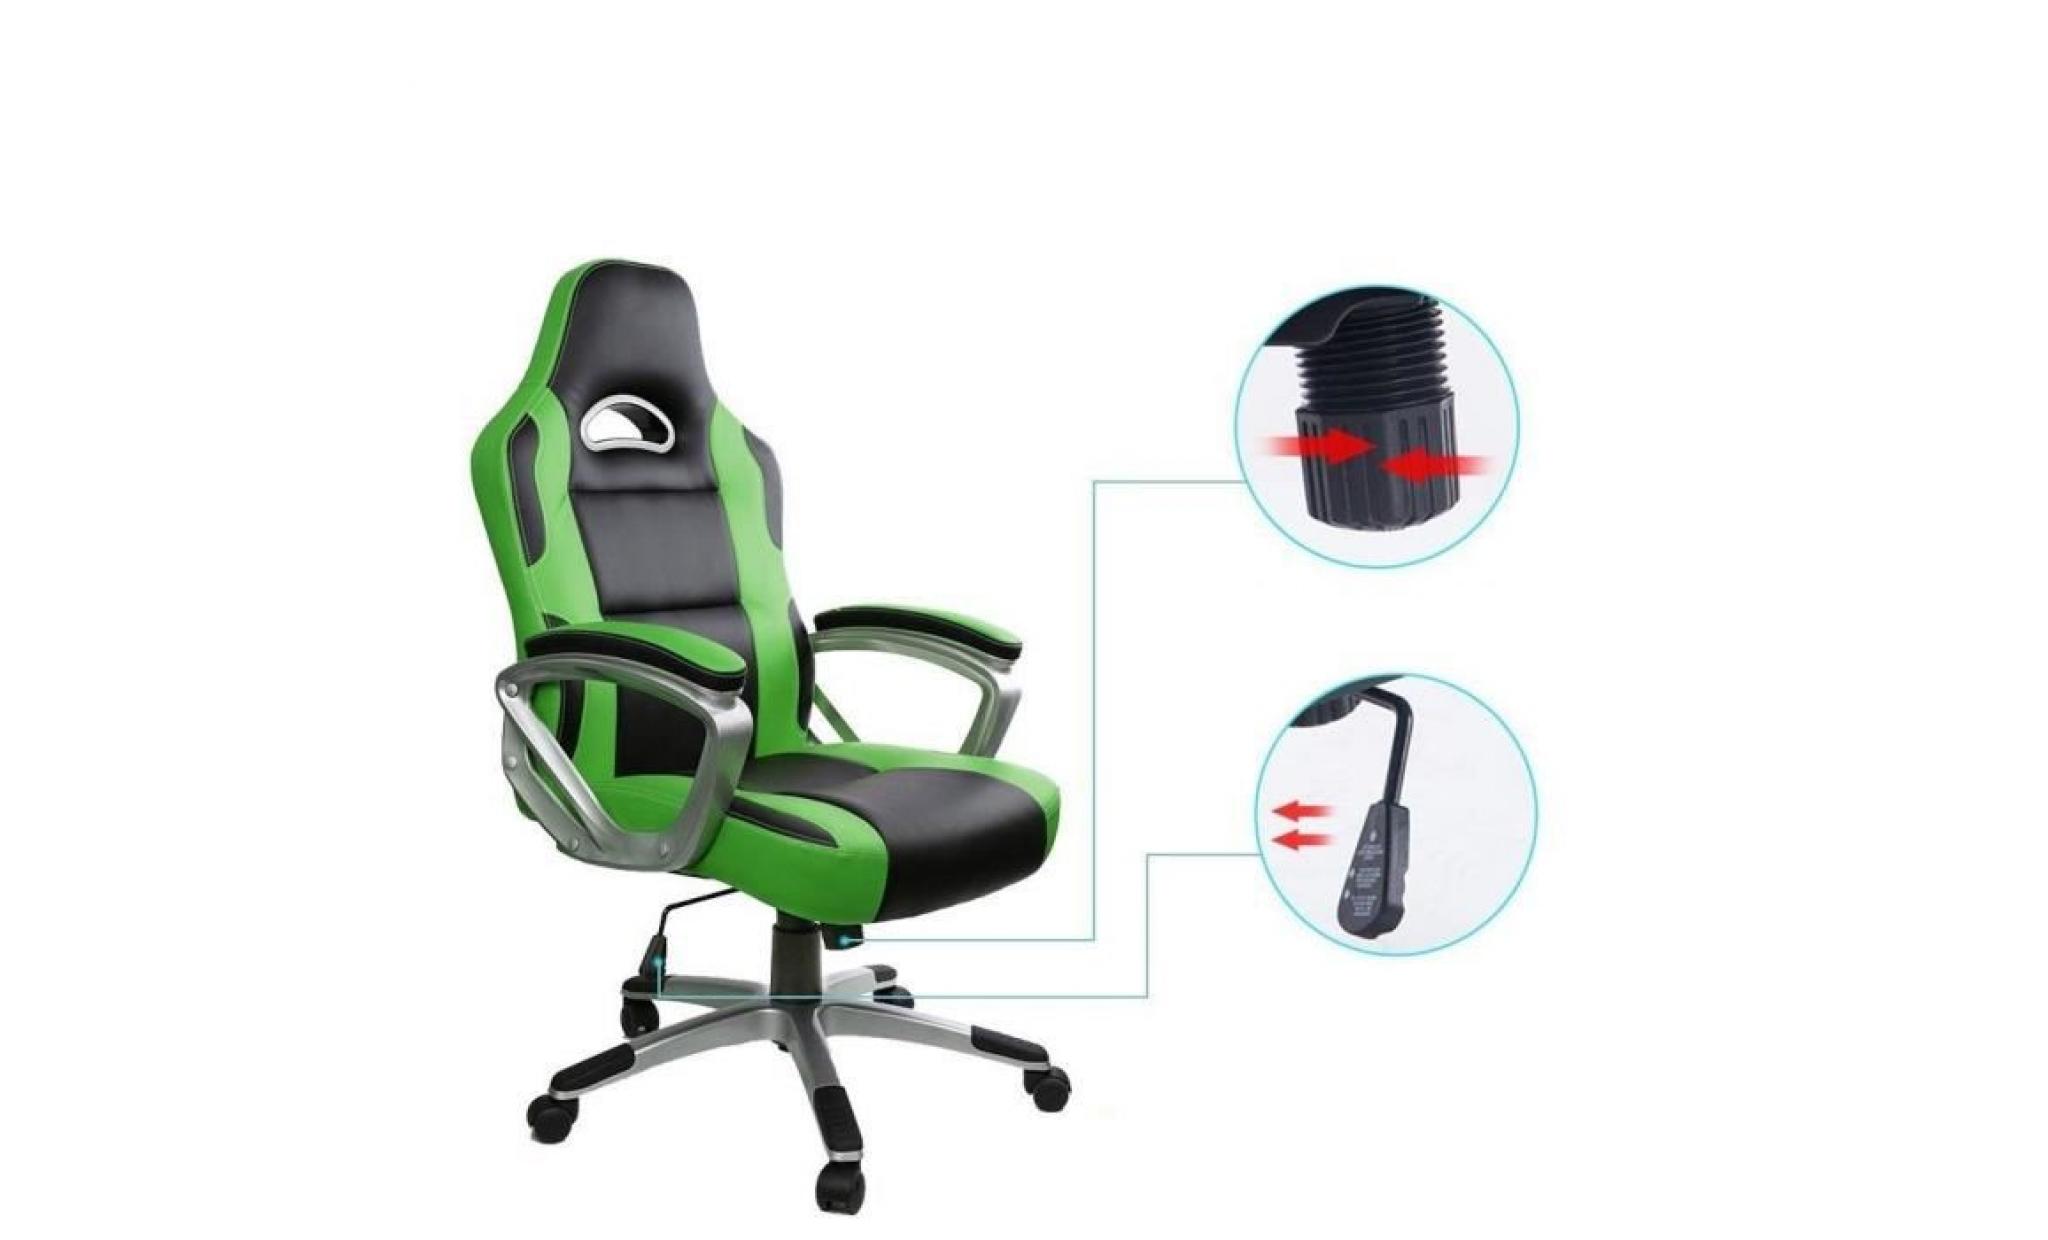 racing chaise de bureau pu   gaming chaise   fauteuil de bureau   hauteur réglable   noir   intimate wm heat pas cher